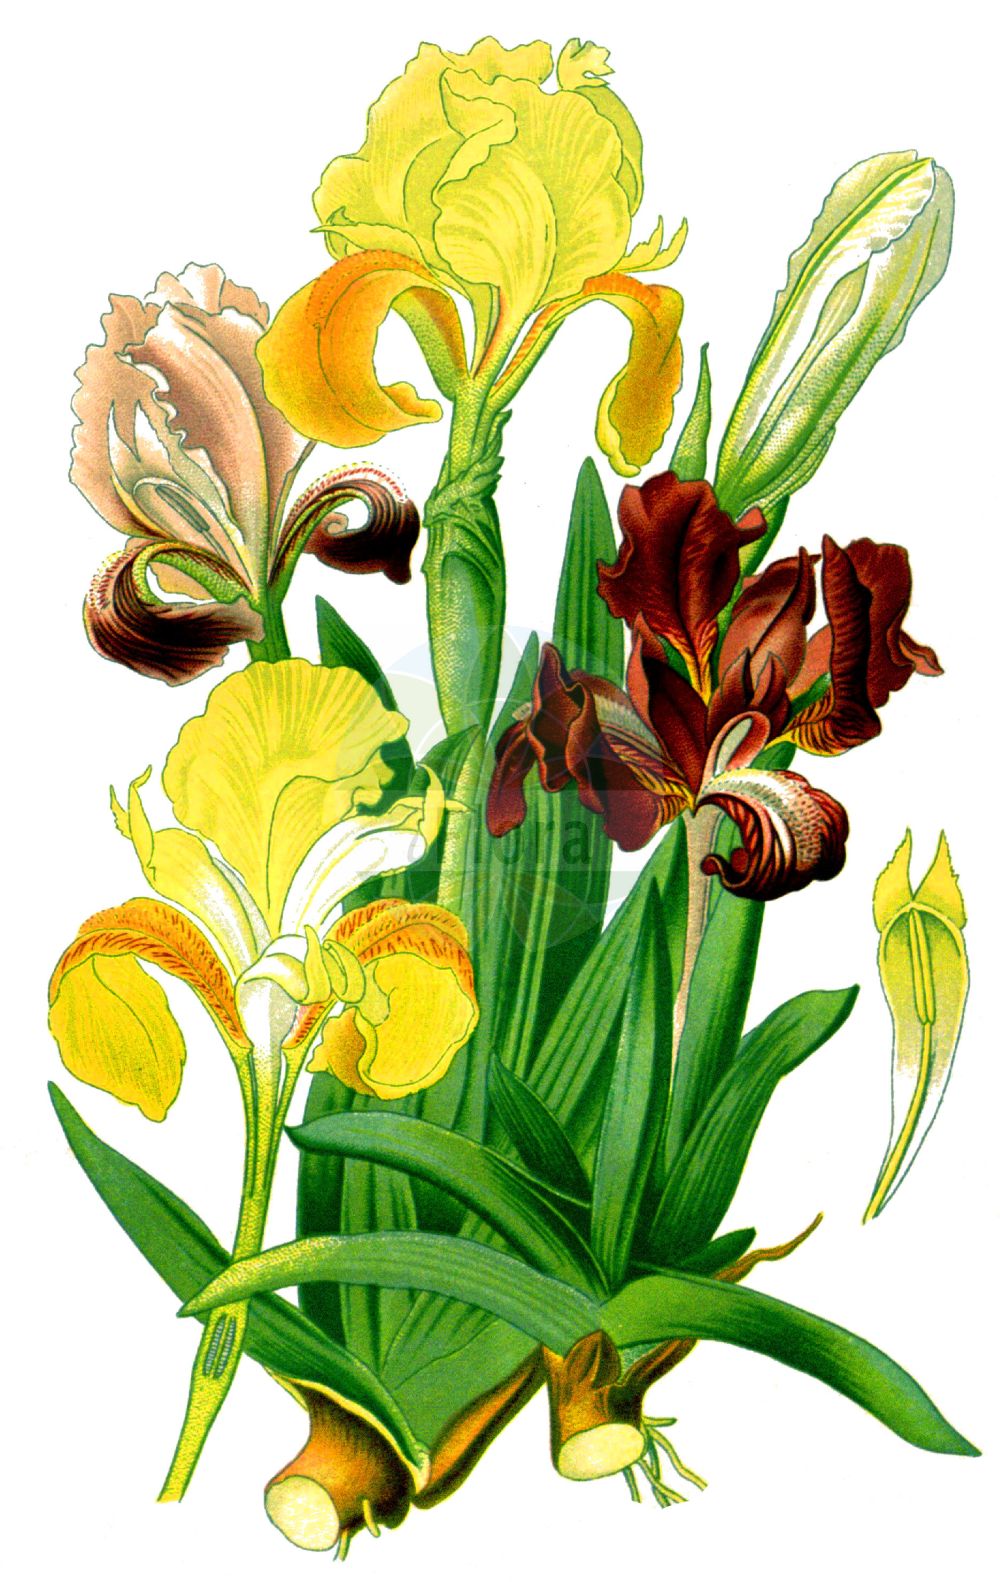 Historische Abbildung von Iris pumila (Zwerg-Schwertlilie - Pygmy Iris). Das Bild zeigt Blatt, Bluete, Frucht und Same. ---- Historical Drawing of Iris pumila (Zwerg-Schwertlilie - Pygmy Iris). The image is showing leaf, flower, fruit and seed.(Iris pumila,Zwerg-Schwertlilie,Pygmy Iris,Iris pumila,Zwerg-Schwertlilie,Pygmy Iris,Dwarf Iris,Iris,Schwertlilie,Iris,Iridaceae,Schwertliliengewächse,Iris family,Blatt,Bluete,Frucht,Same,leaf,flower,fruit,seed,Step et al. (1896-1897))